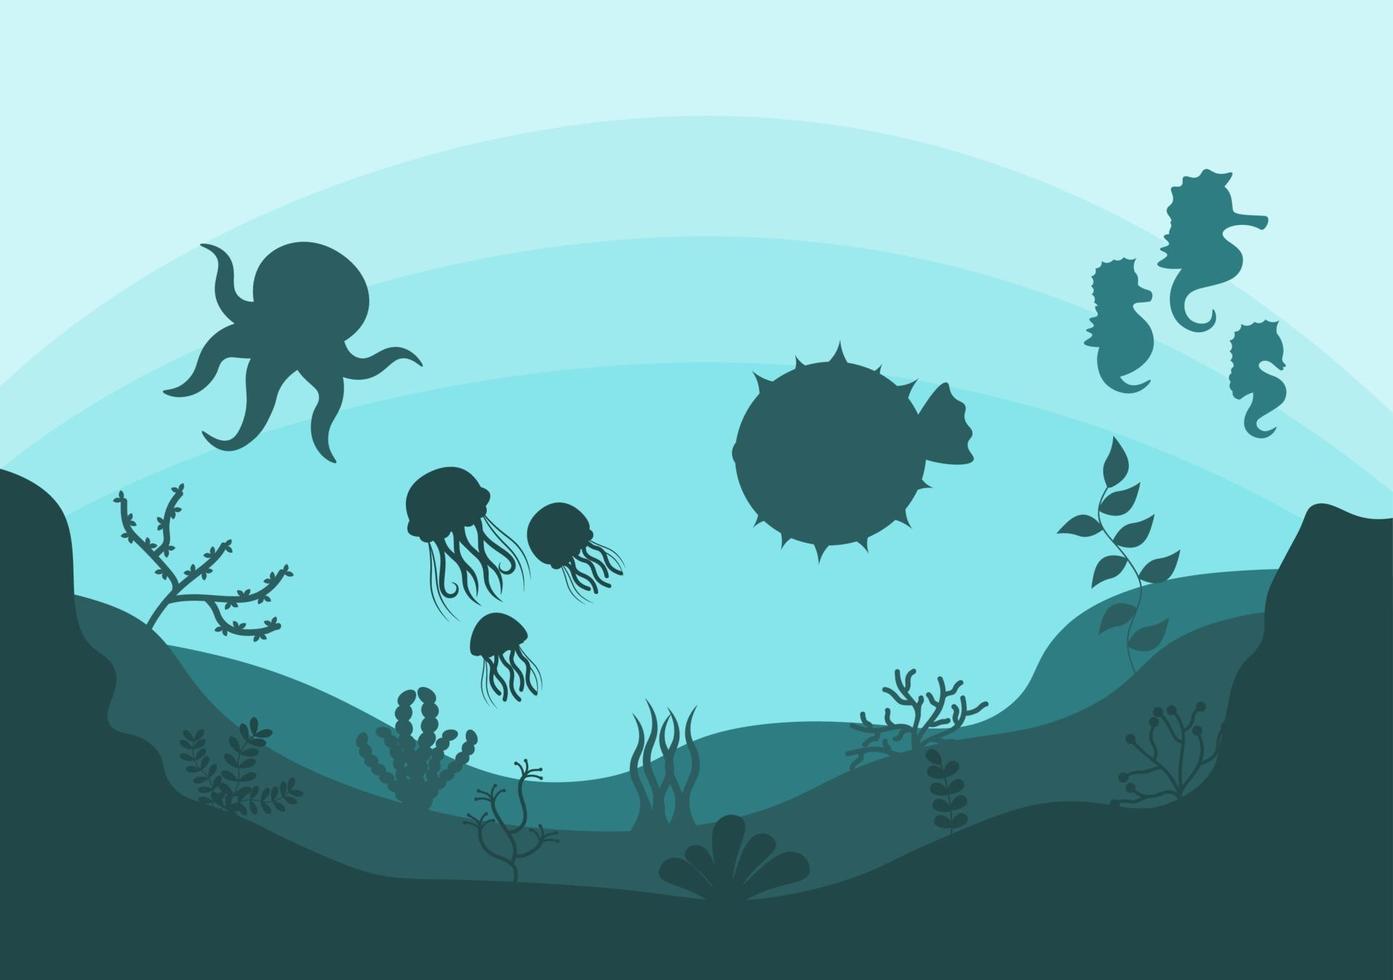 onderwaterlandschap en schattig dierenleven in de zee met zeepaardjes, zeesterren, octopus, schildpadden, haaien, vissen, kwallen, krabben. vector illustratie